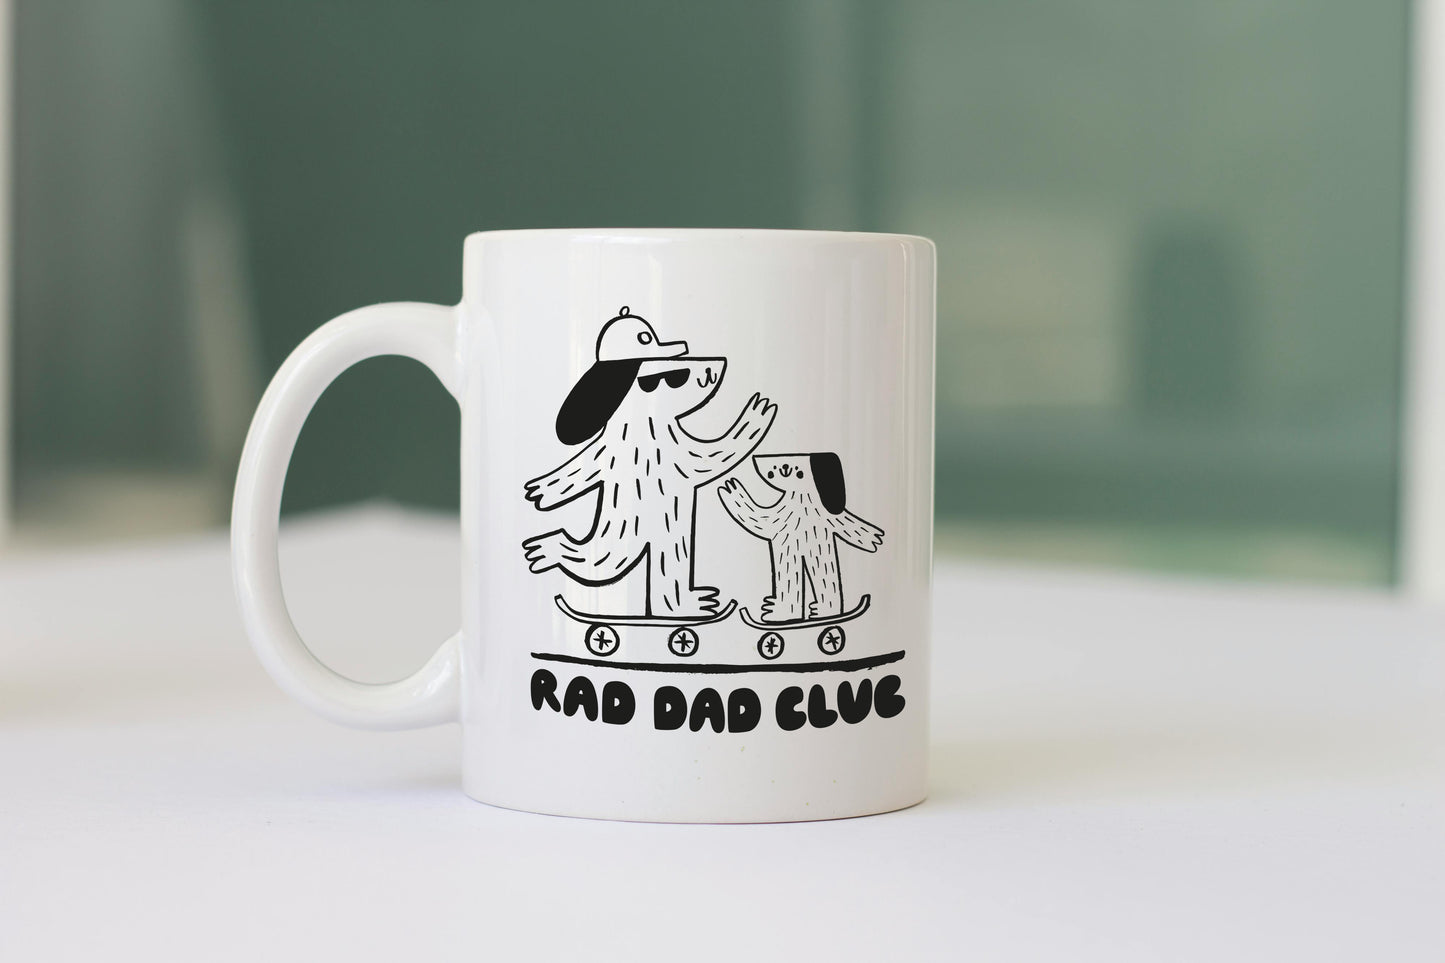 Rad Dad Club! Father's Day Mug